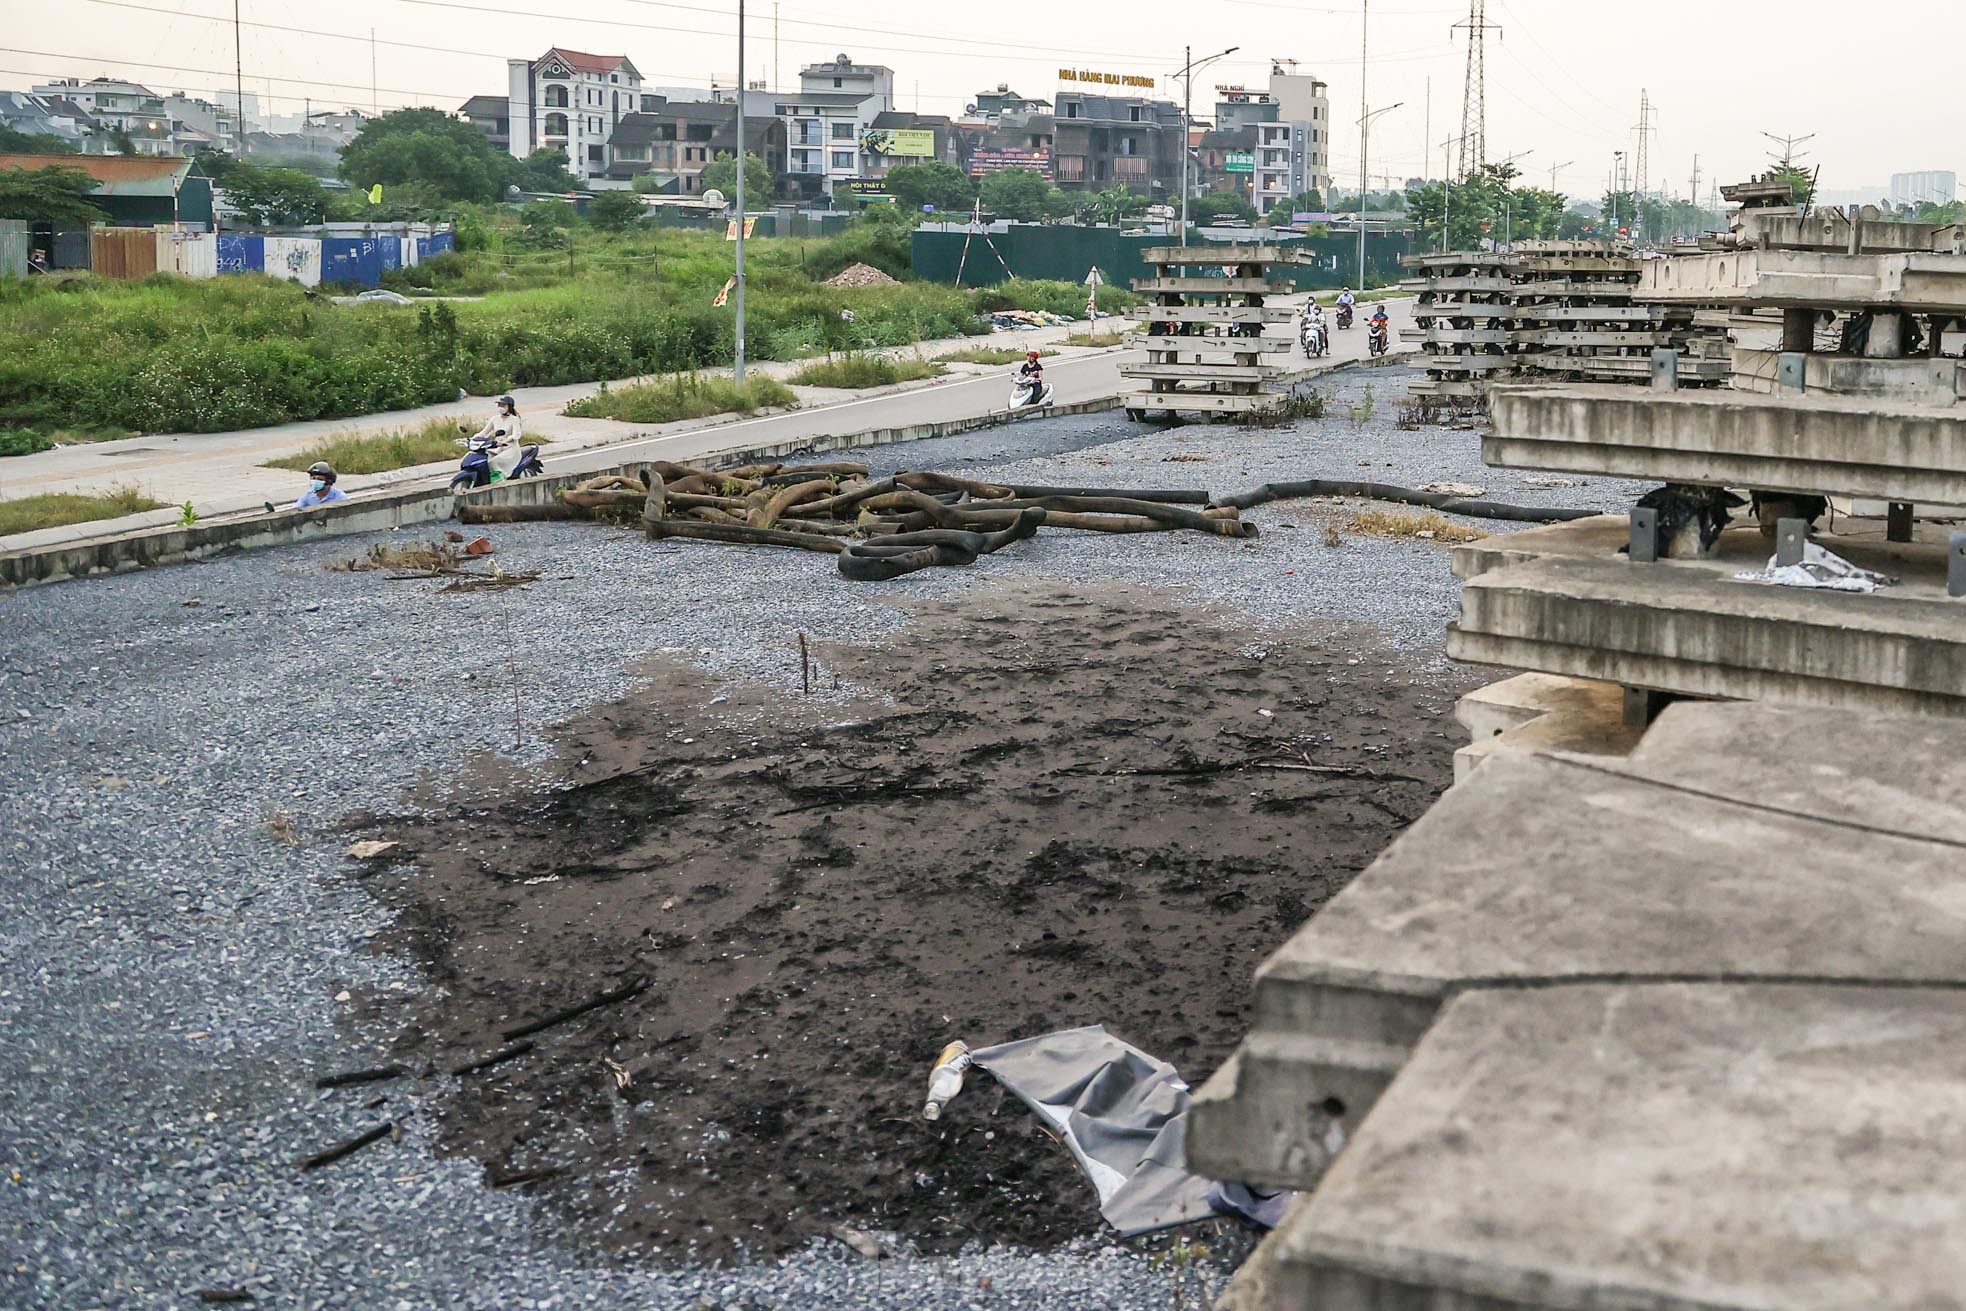 Cầu vượt bỏ hoang trên đại lộ nghìn tỷ ở Hà Nội - Ảnh 10